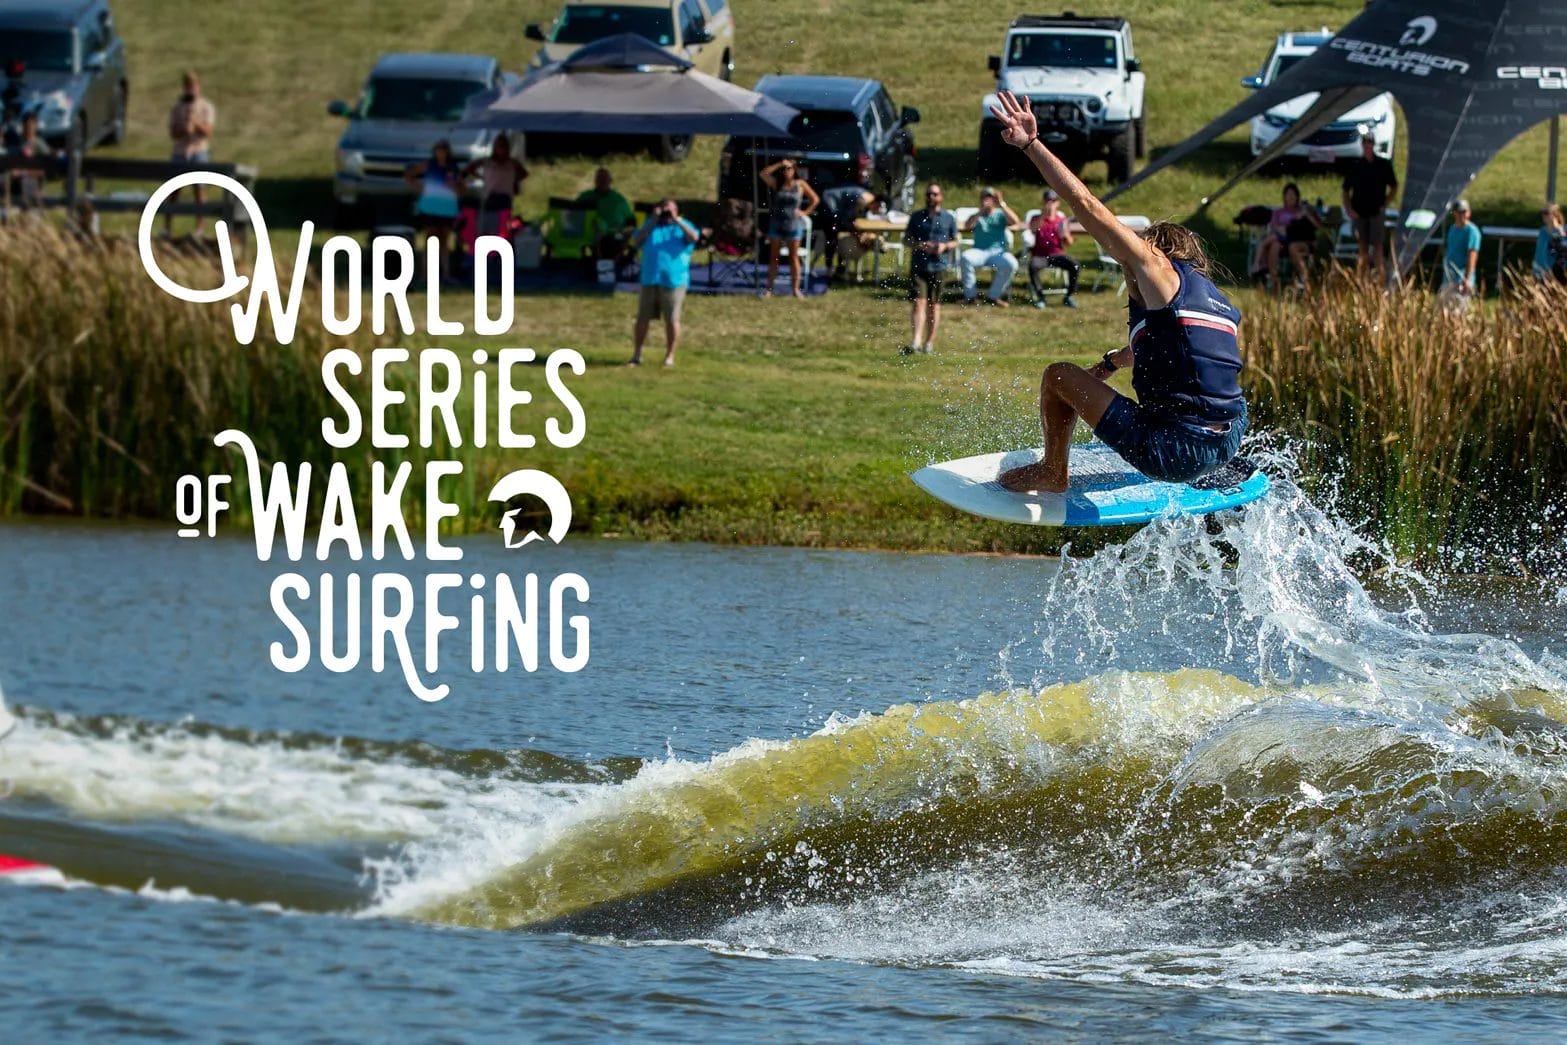 World series of wakesurfing, showcasing the best wakeboat and wakesurf board skills.